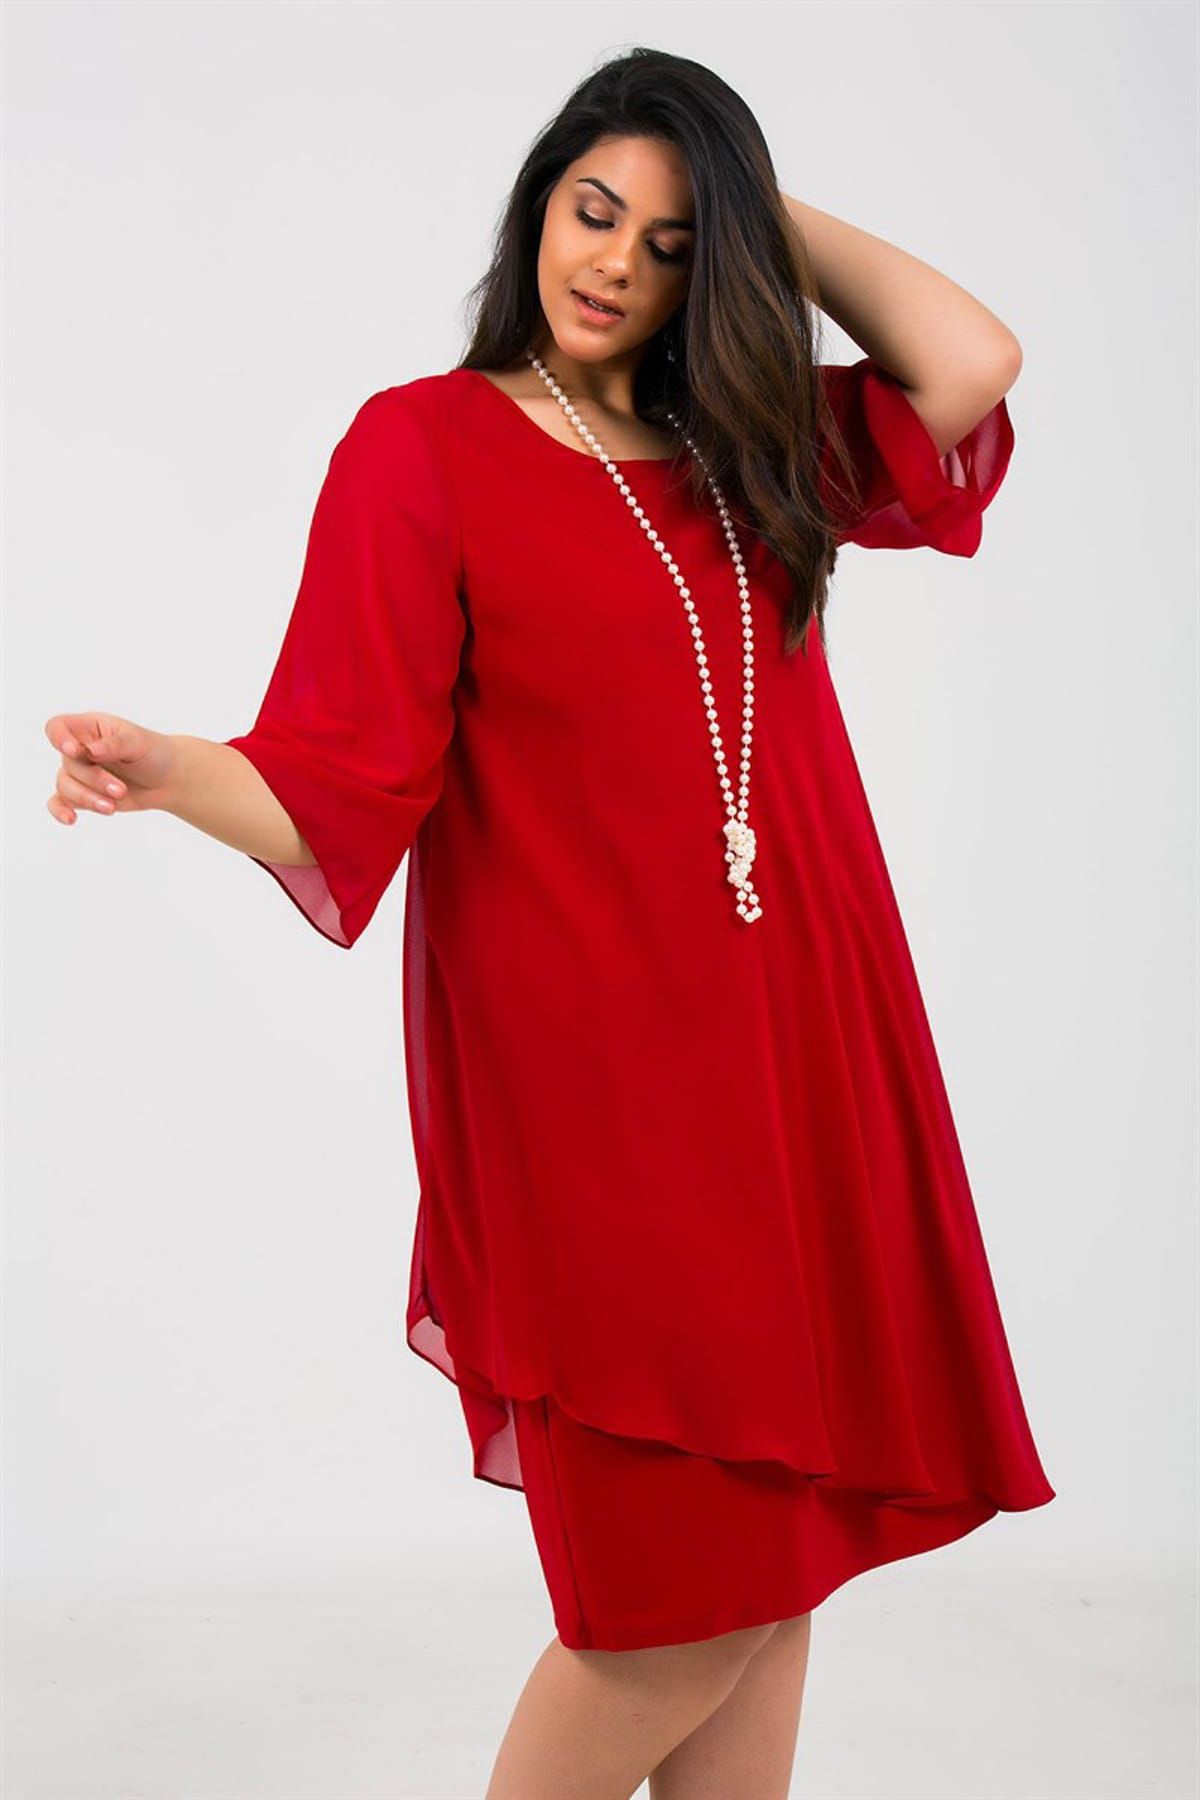 By Saygı Kadın İnci Kolyeli Astarlı Şifon Abiye Elbise Kırmızı S-19Y3050004